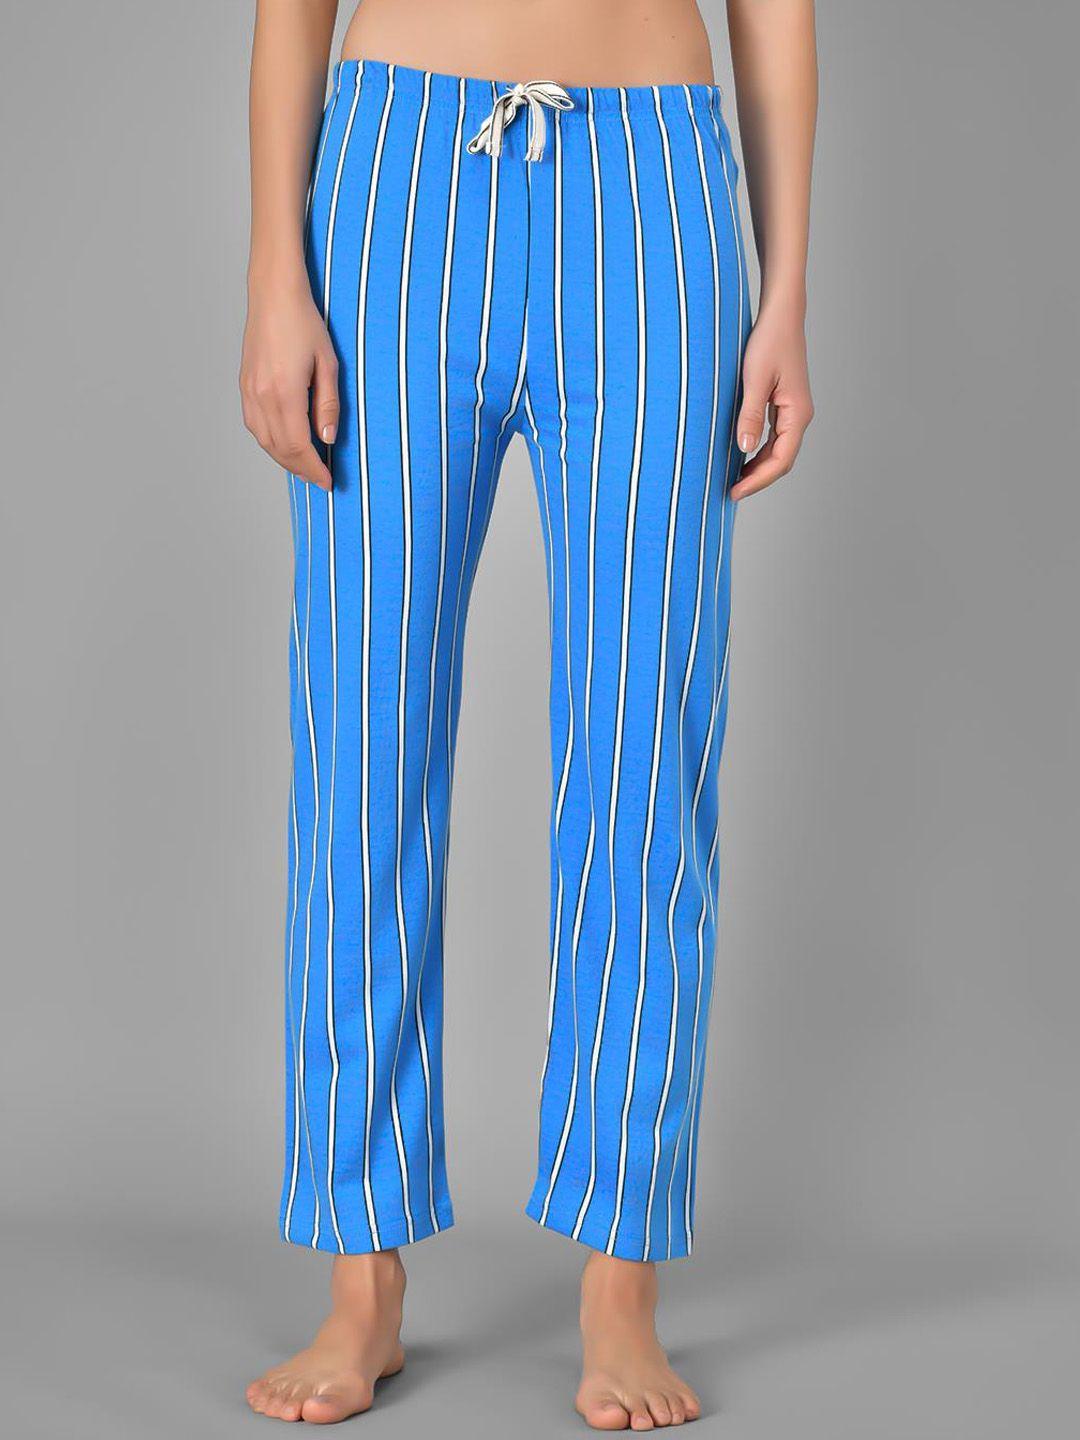 kotty striped cotton lounge pants